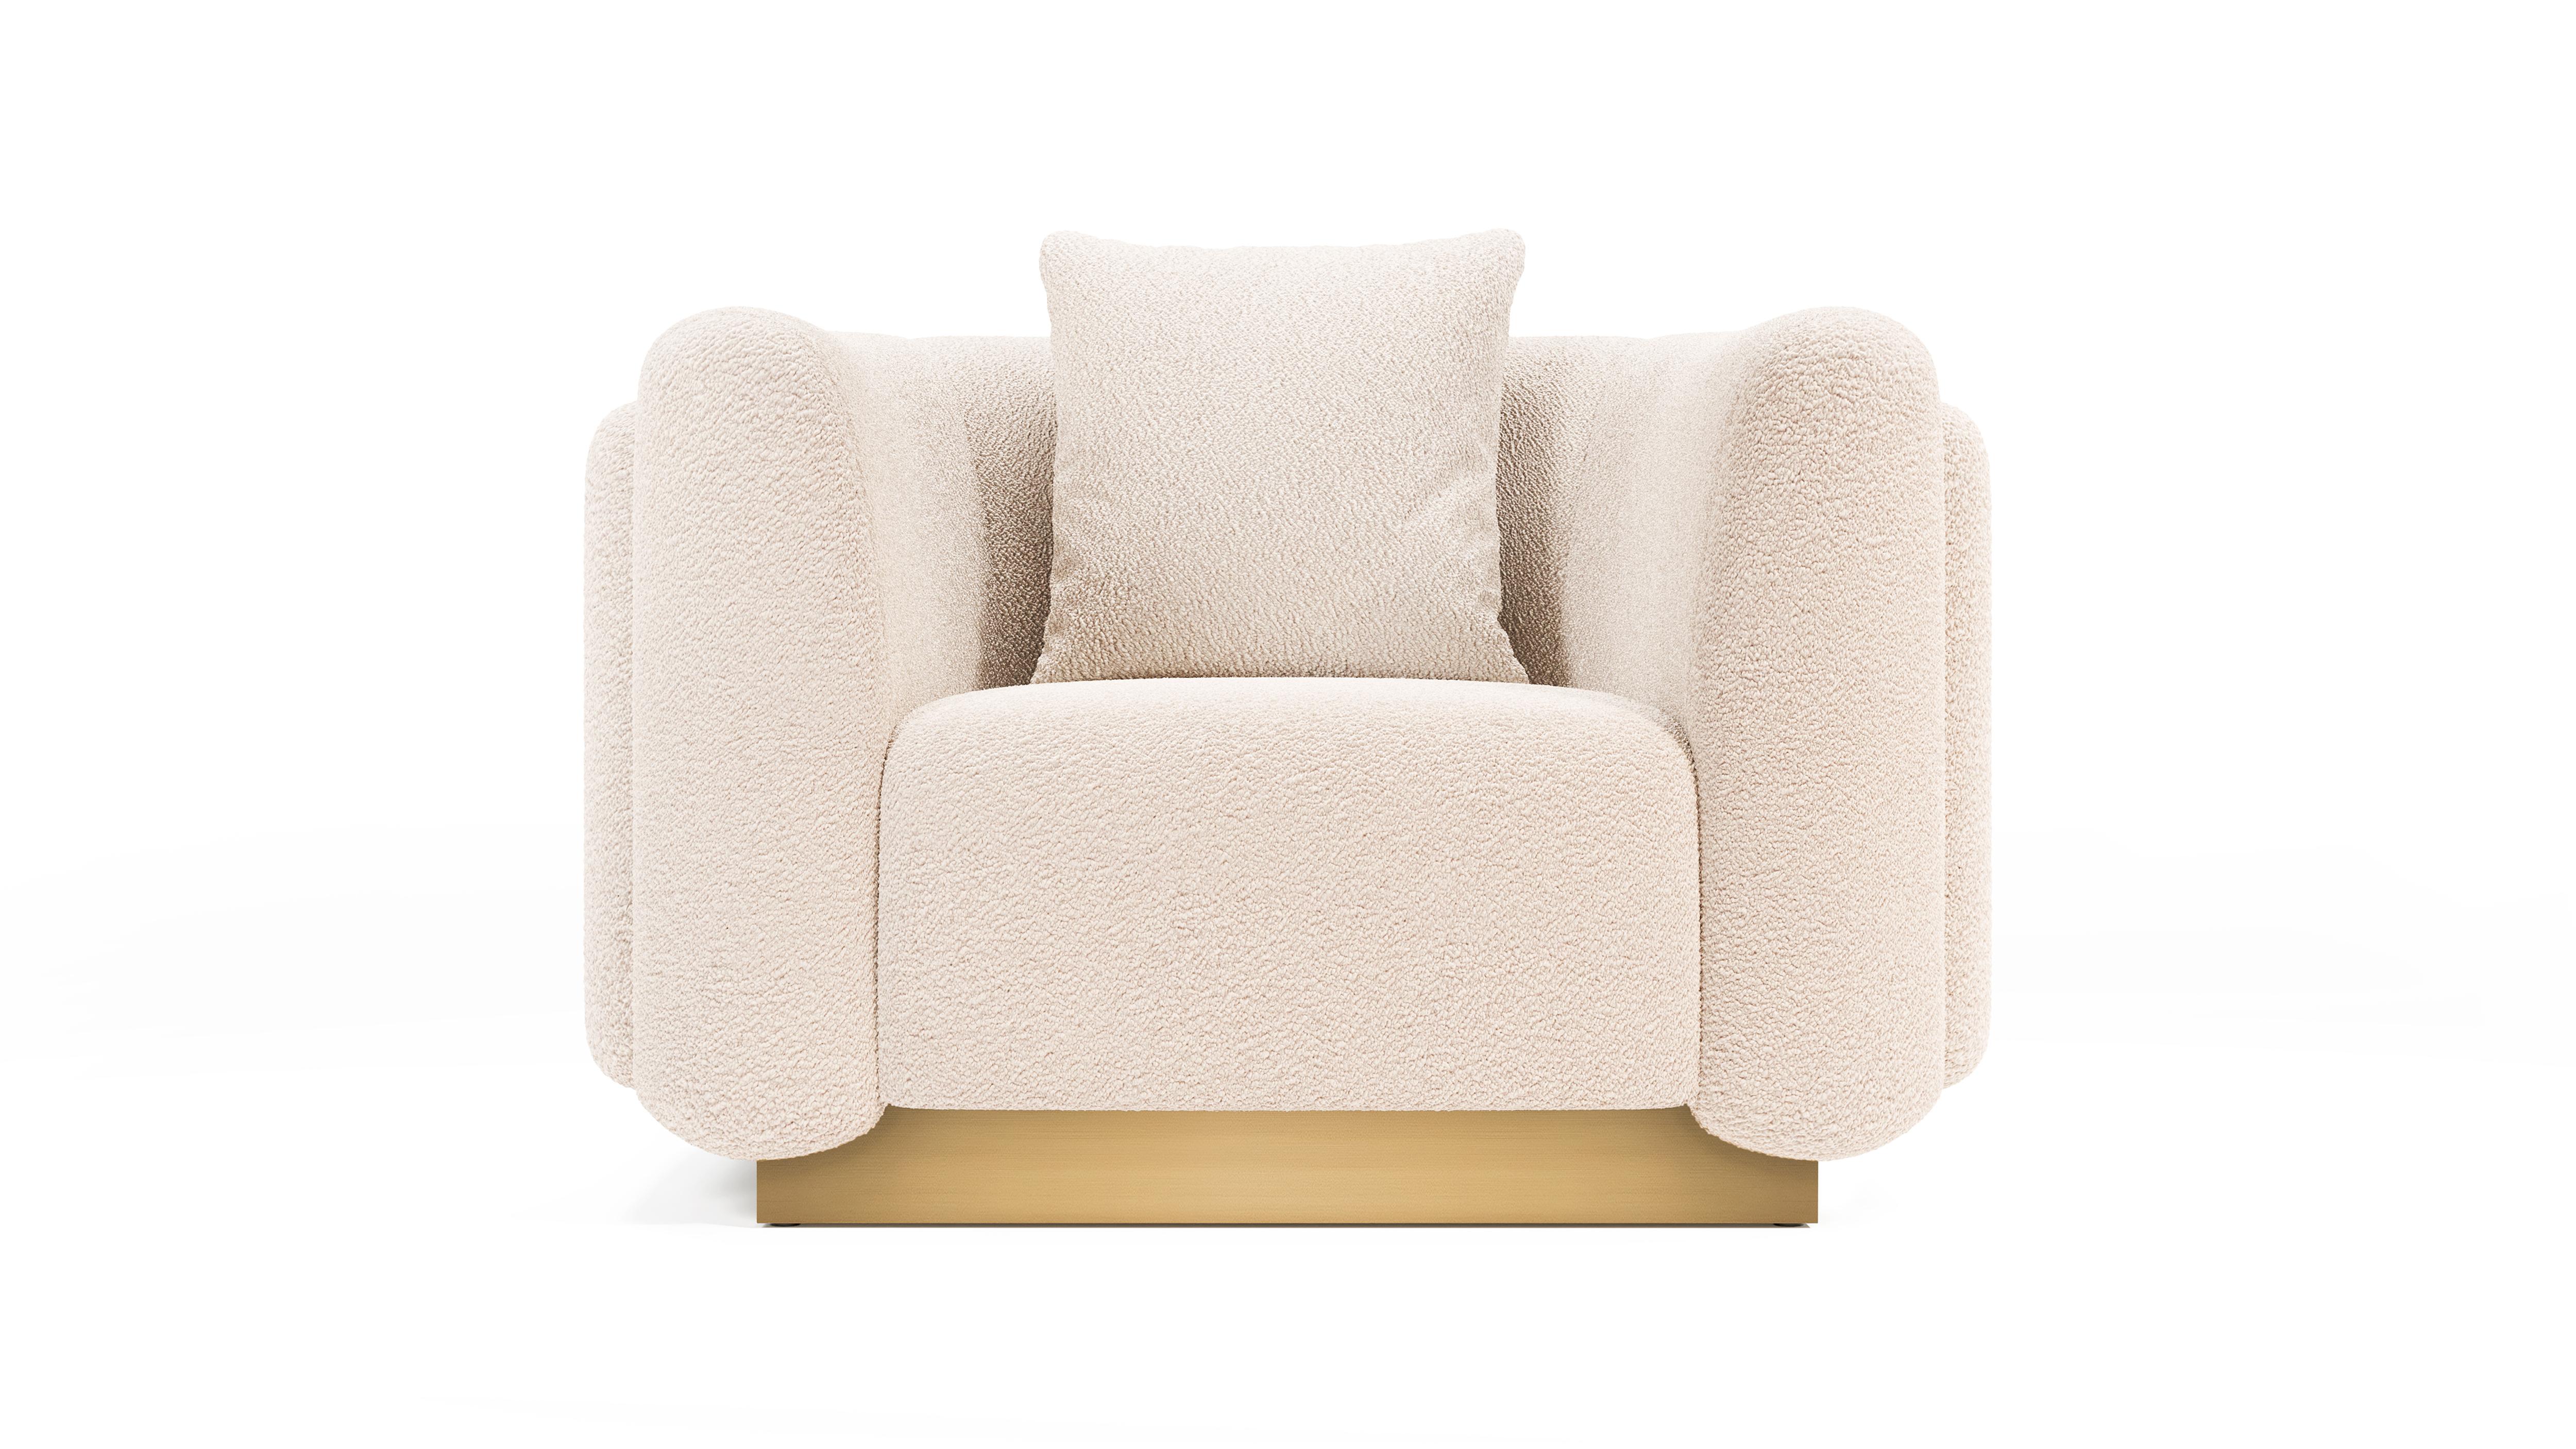 Foz est un fauteuil au même design que le grand canapé qui rassemble des détails surprenants d'une plage située à Porto, au nord du Portugal.

Conçu en couches, le contour du fauteuil est une ode aux vagues de la mer qui atteignent lentement le